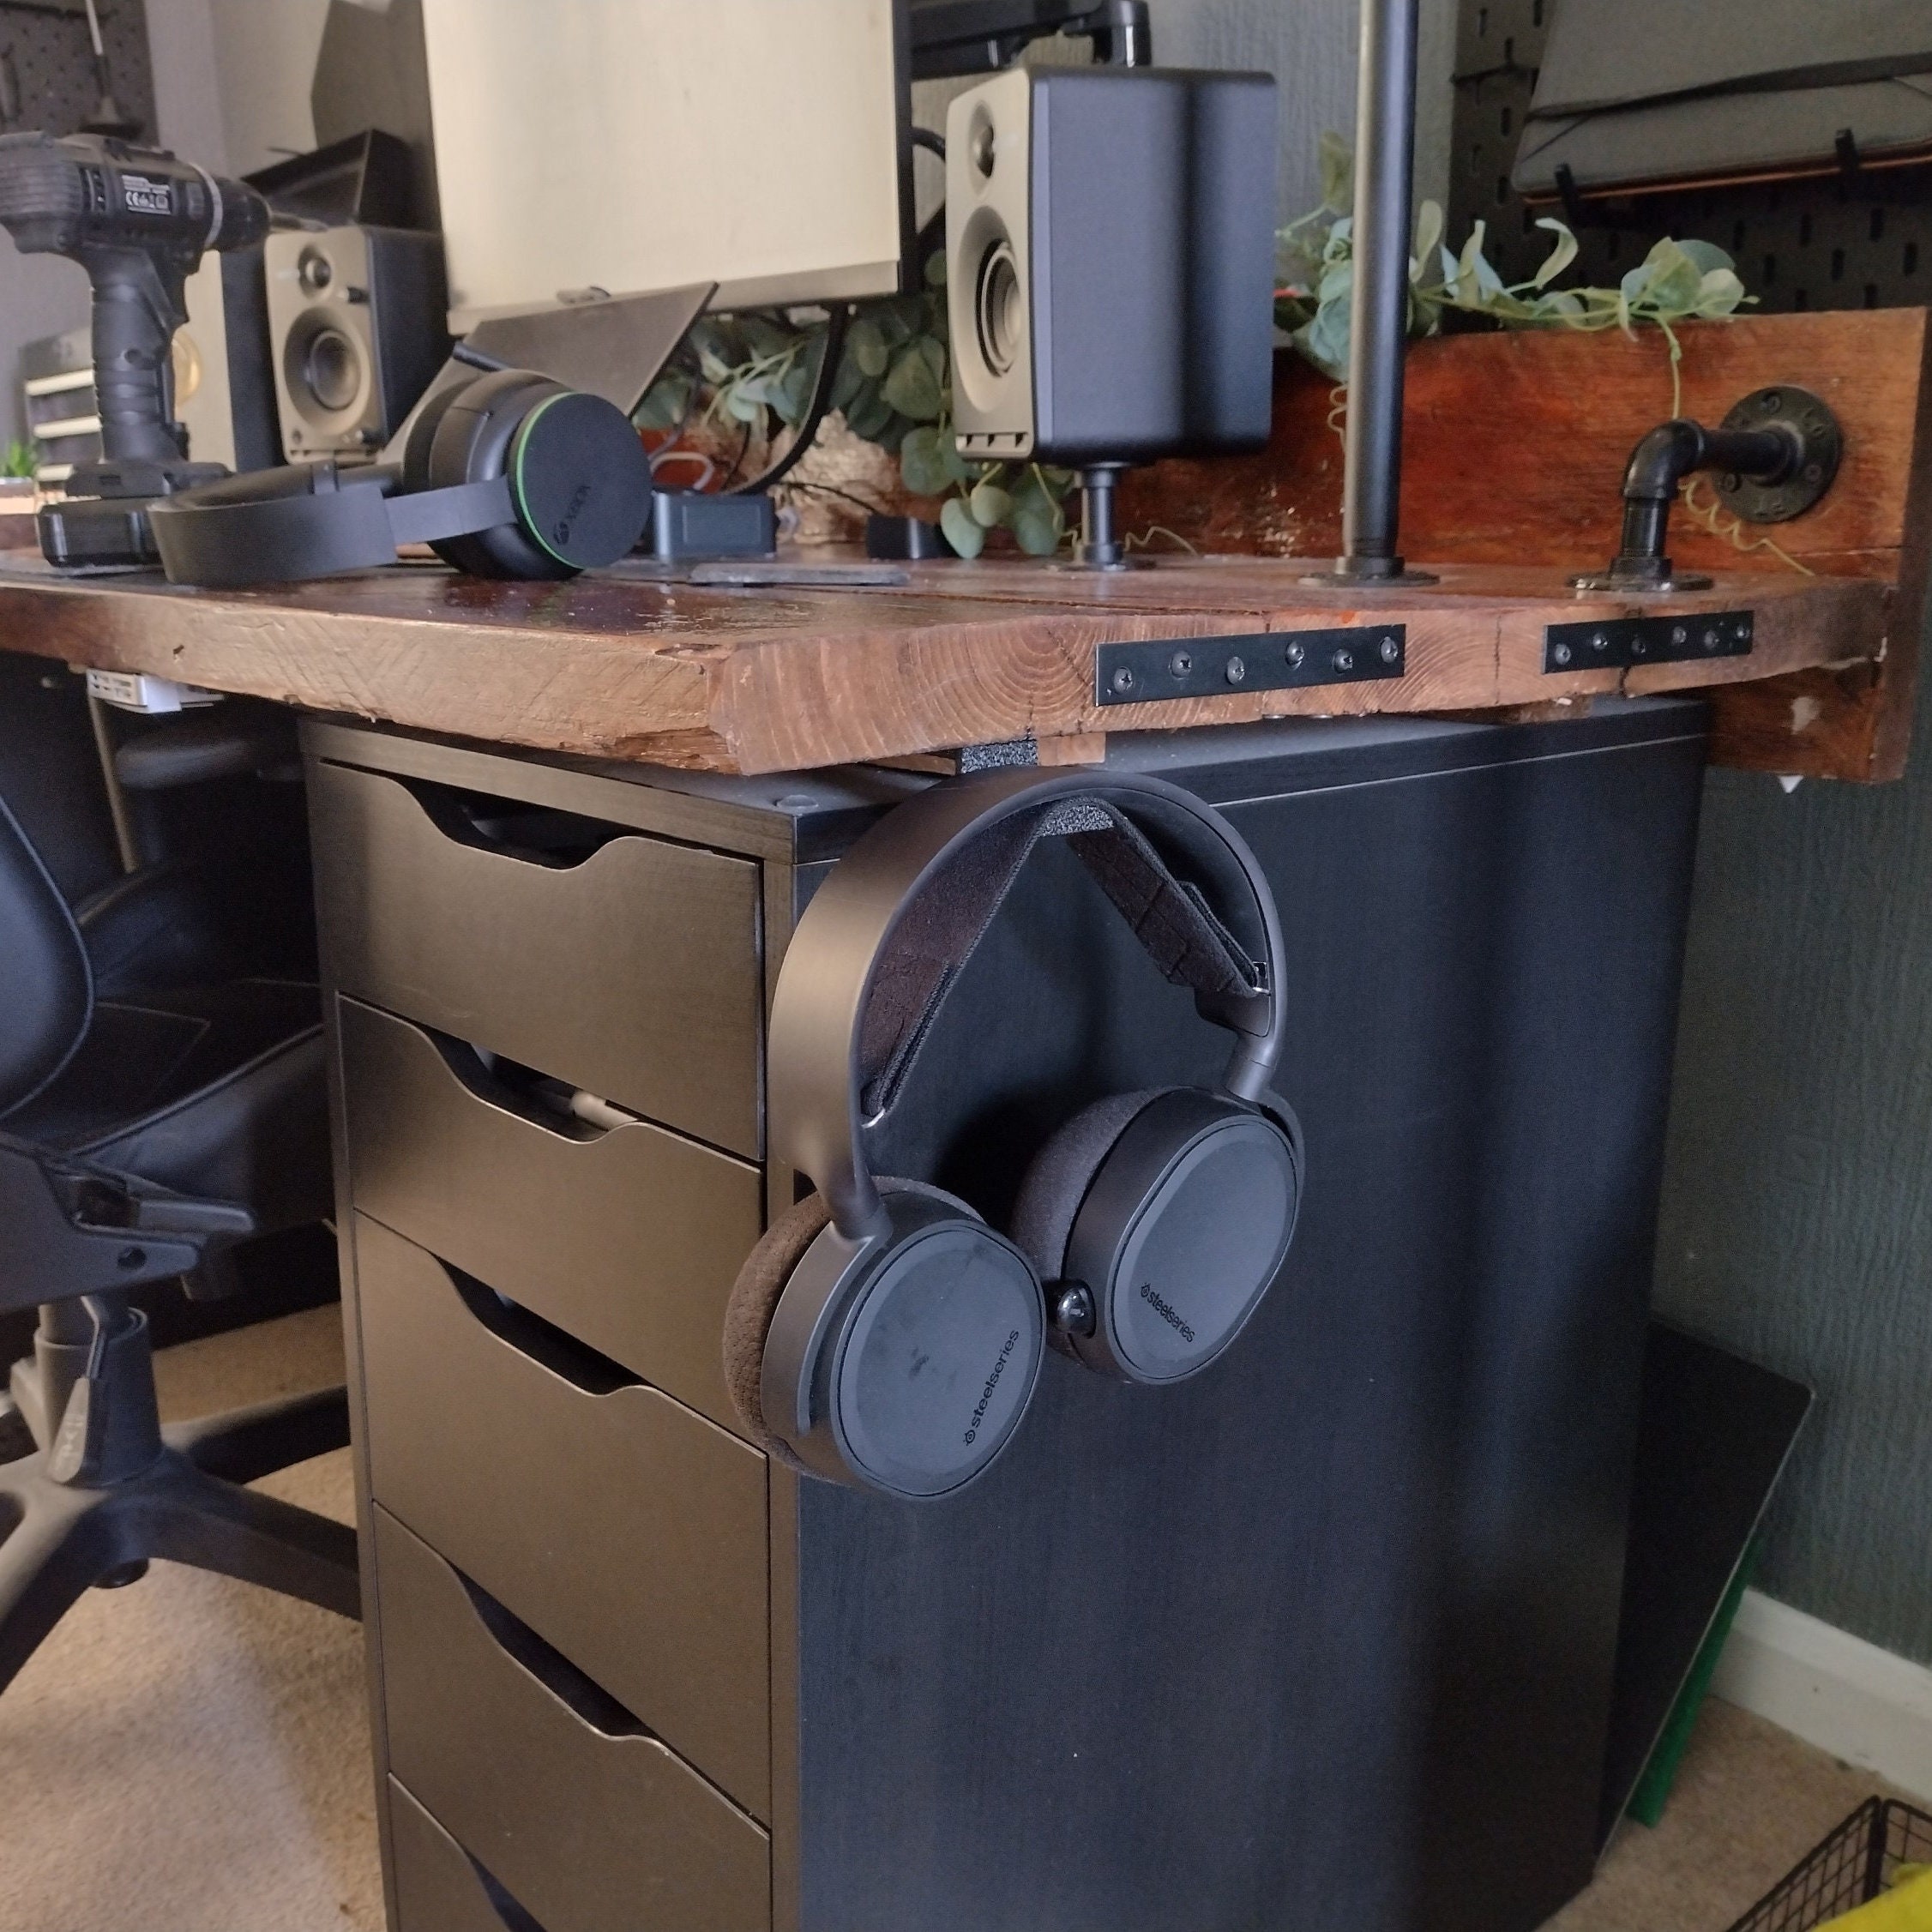 Walopola Kopfhörerständer-Aufhängerhalter, Schreibtisch-Taschenhalter -  Klemme am Schreibtisch-Aufhängerhaken | Platzsparender, universell